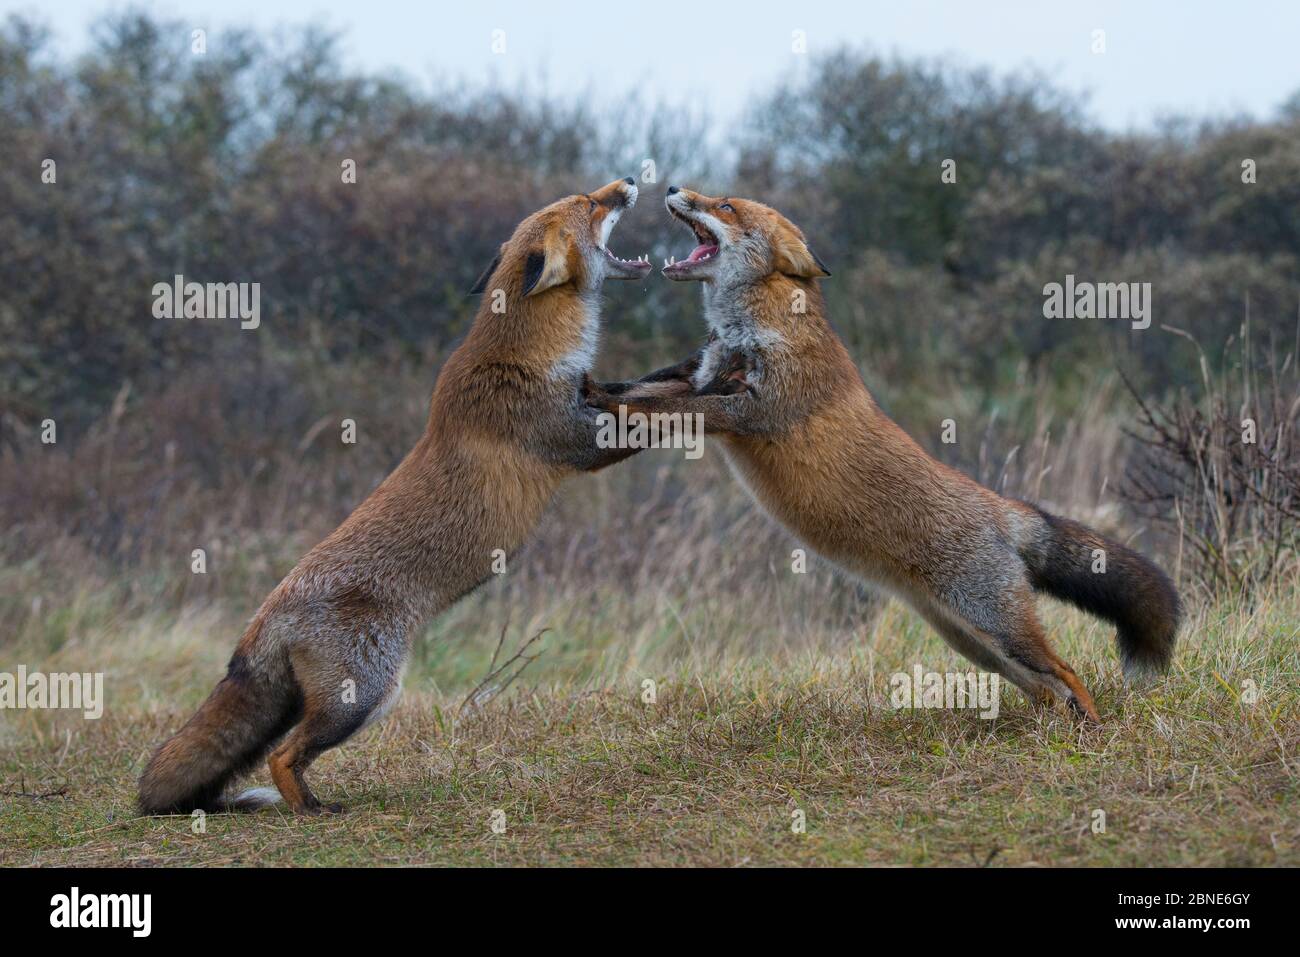 Zwei rote Füchse (Vulpes vulpes) kämpfen, Amsterdamse Waterleidingduinen, in der nähe von Zandvoort, Niederlande, November. Stockfoto